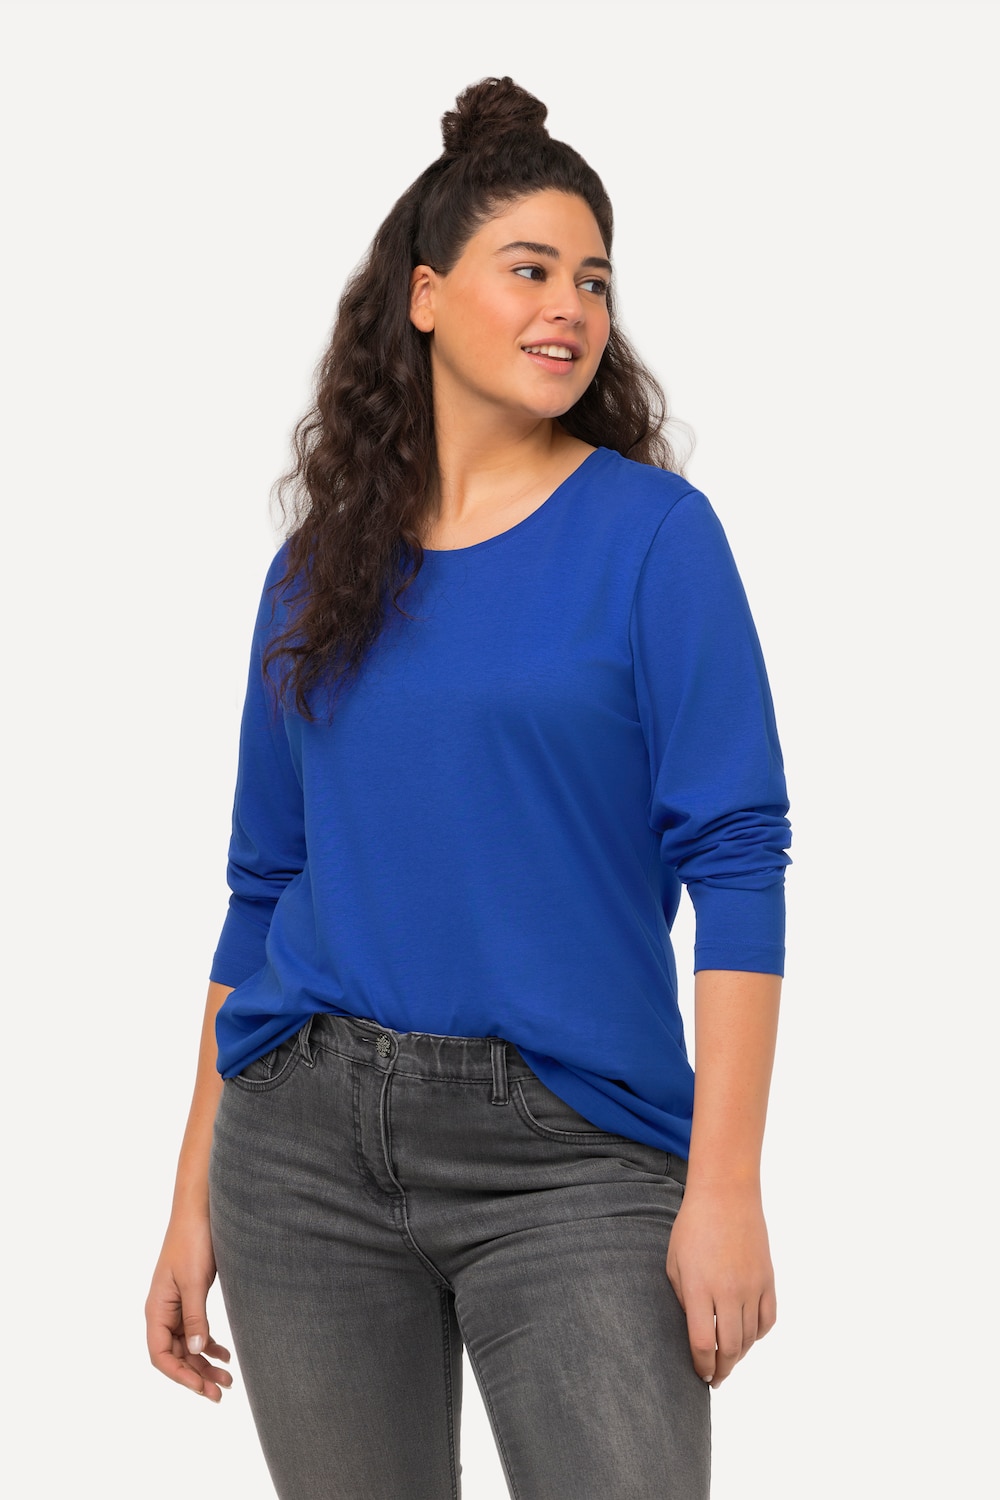 Grote Maten shirt, Dames, blauw, Maat: 46/48, Ulla Popken